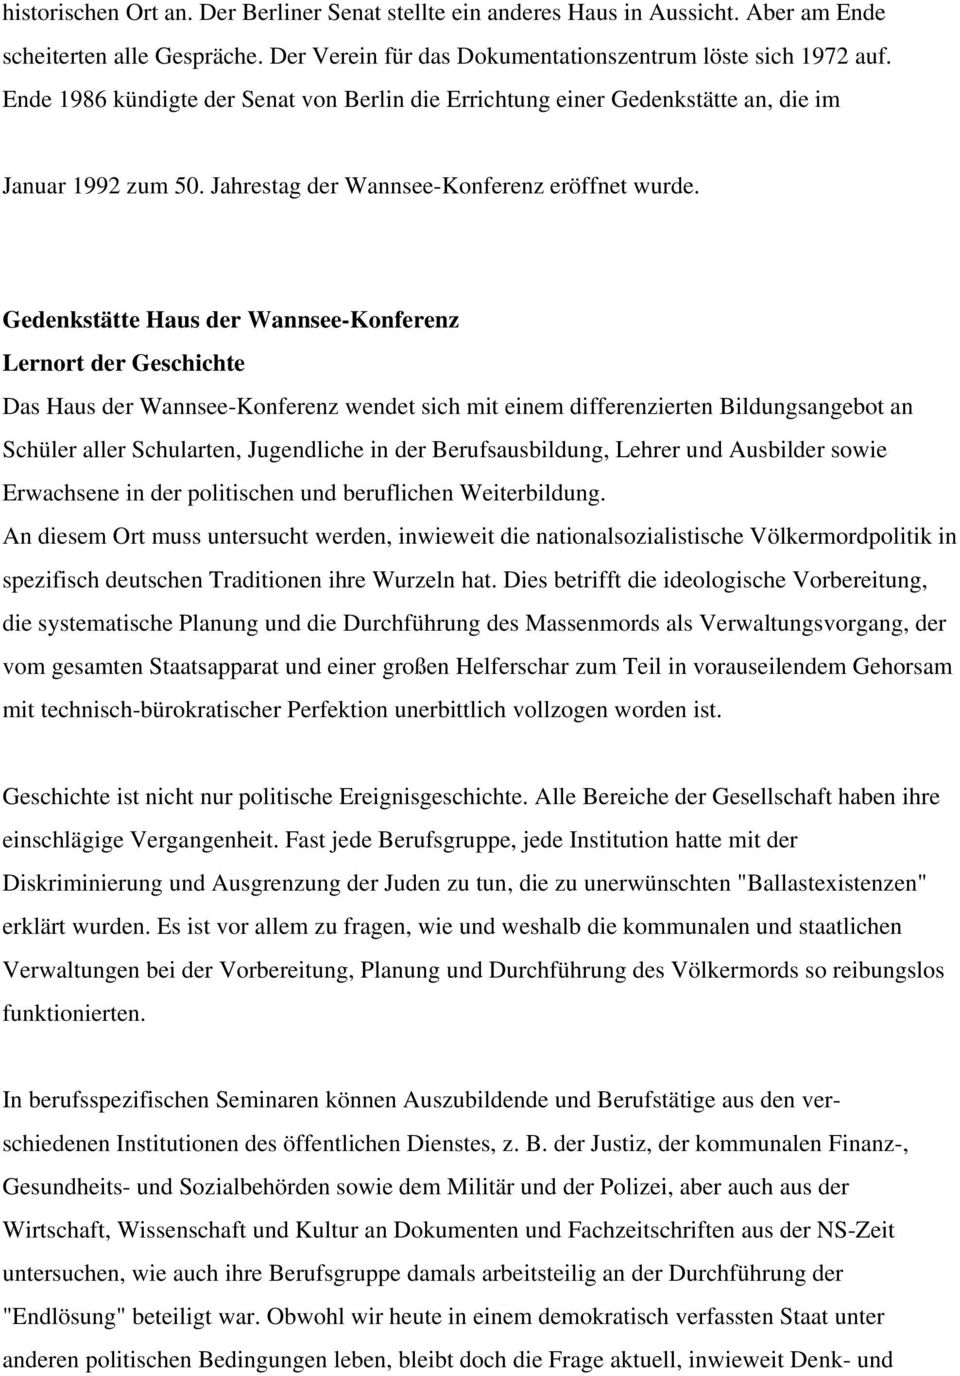 Gedenkstätte Haus der Wannsee-Konferenz Lernort der Geschichte Das Haus der Wannsee-Konferenz wendet sich mit einem differenzierten Bildungsangebot an Schüler aller Schularten, Jugendliche in der